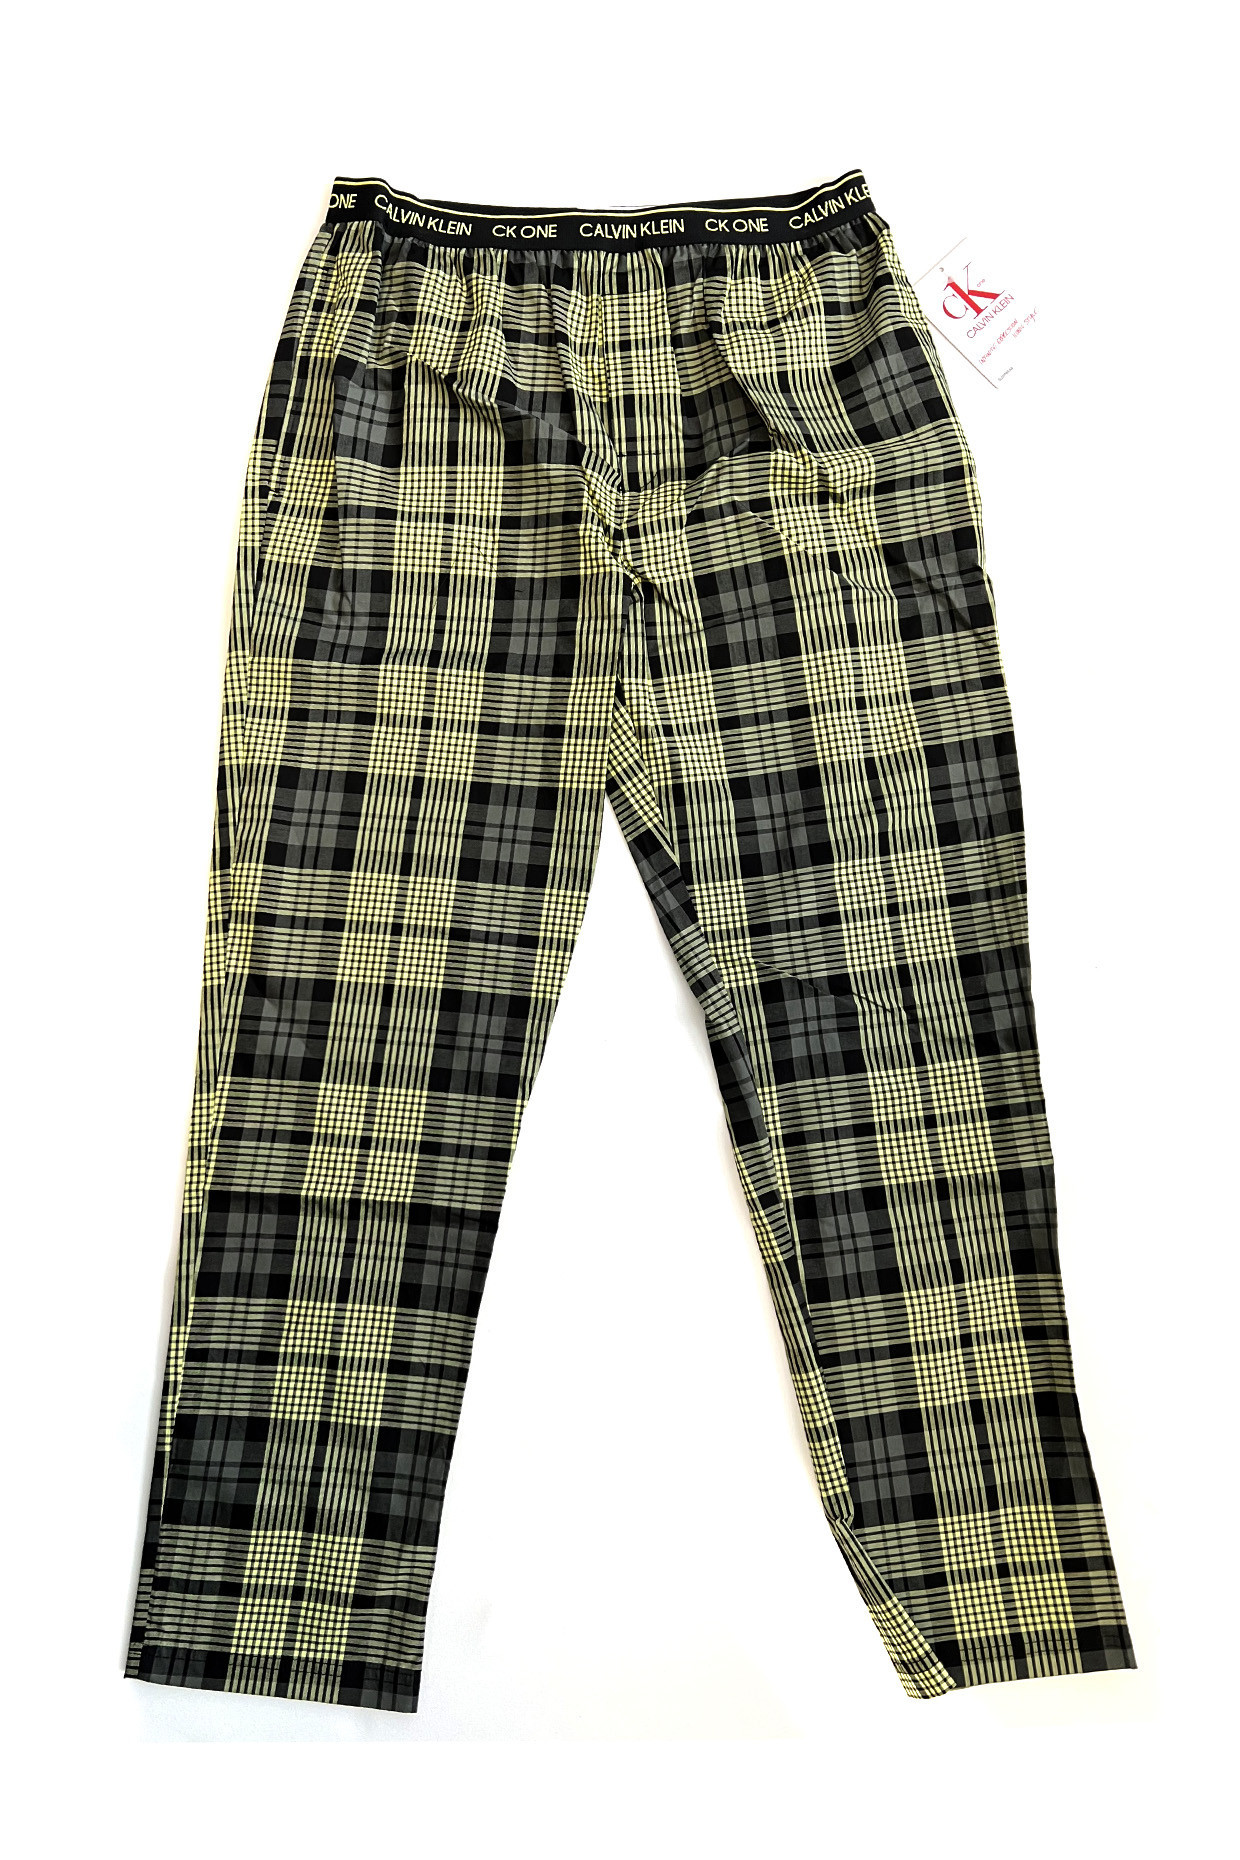 Pánské kalhoty na spaní NM1869E 1YS zeleno-černé - Calvin Klein M zelená a černá